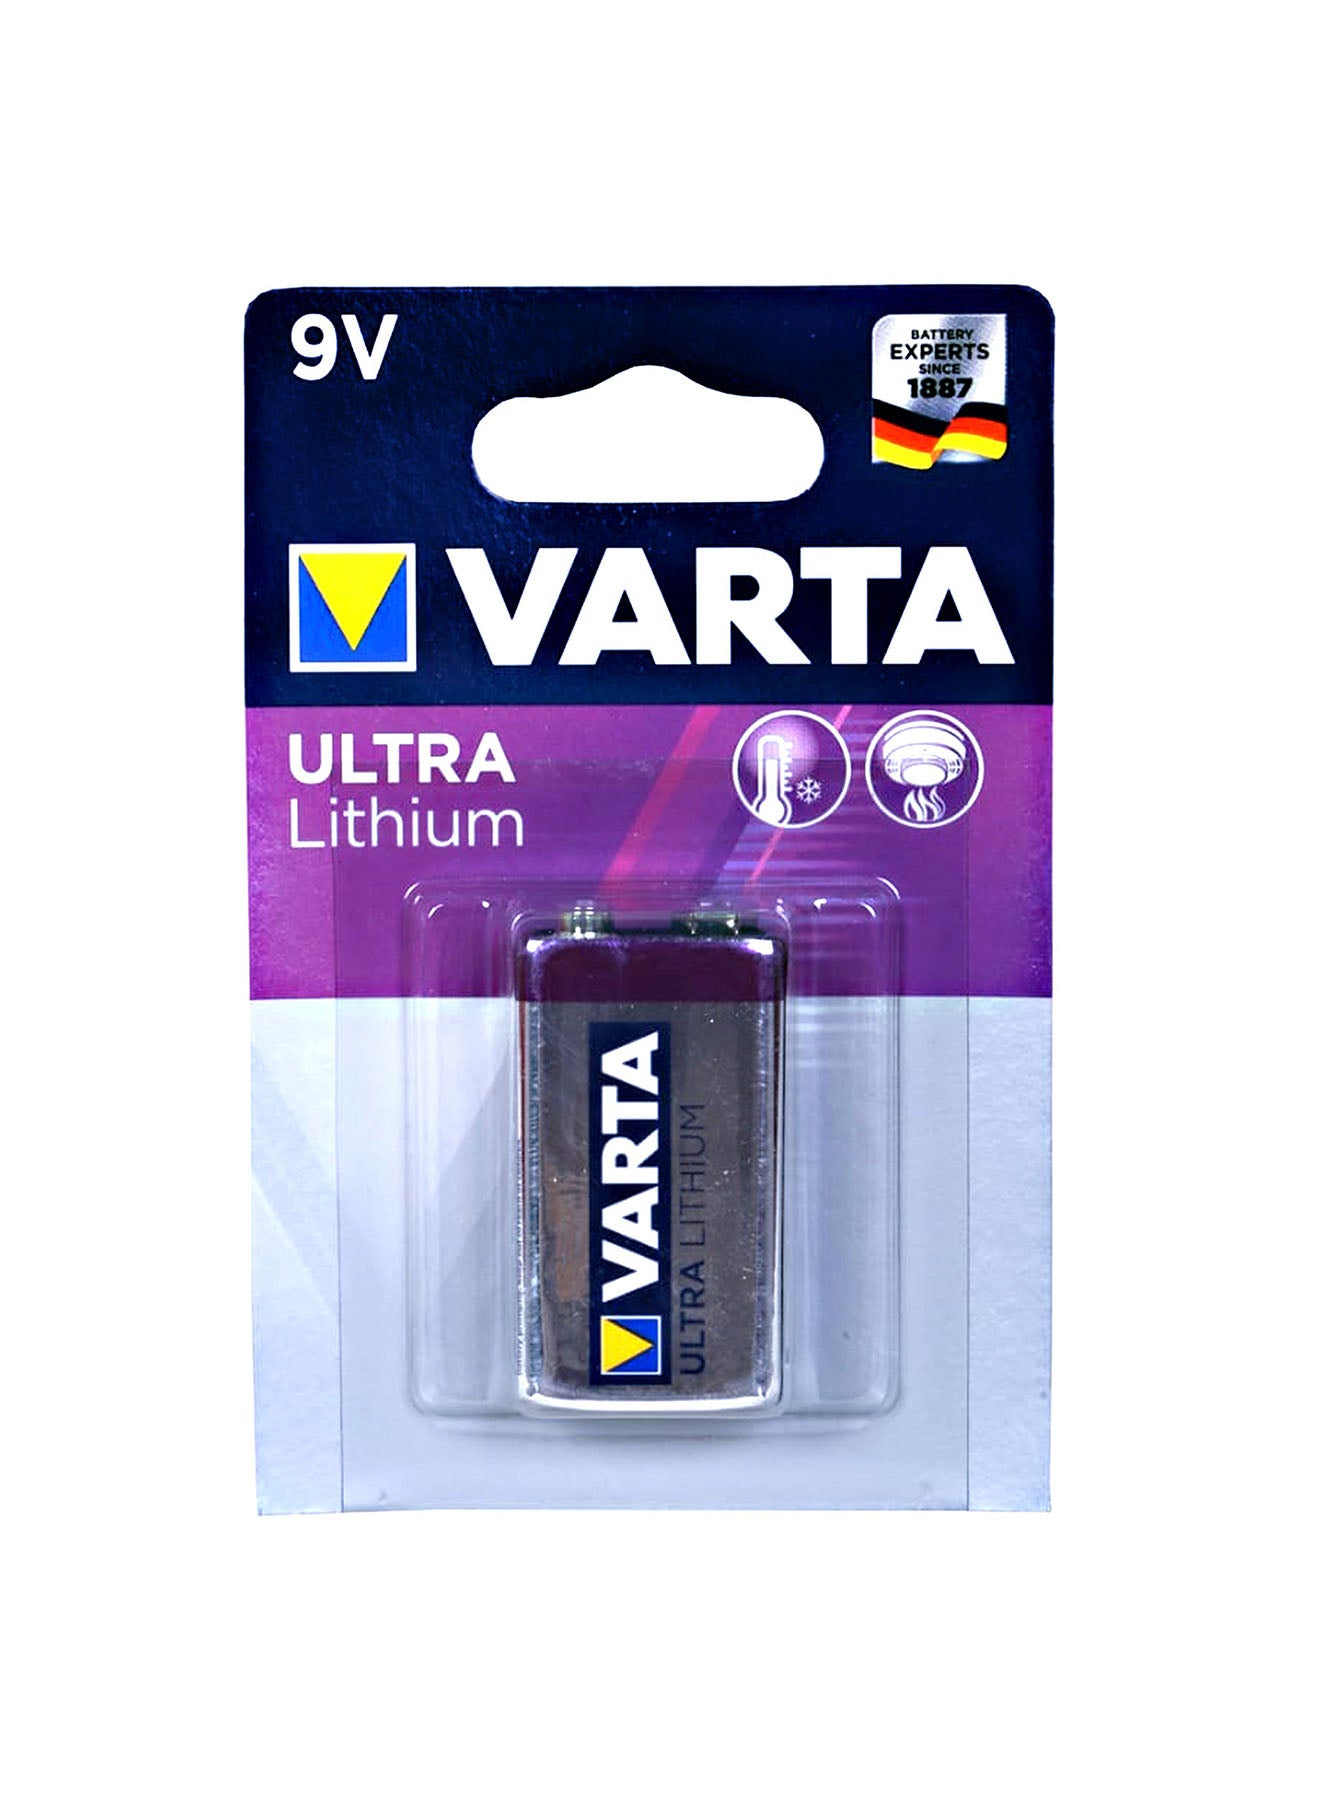 Varta Ultra Lithium 9VBlock 6 LR Batteries